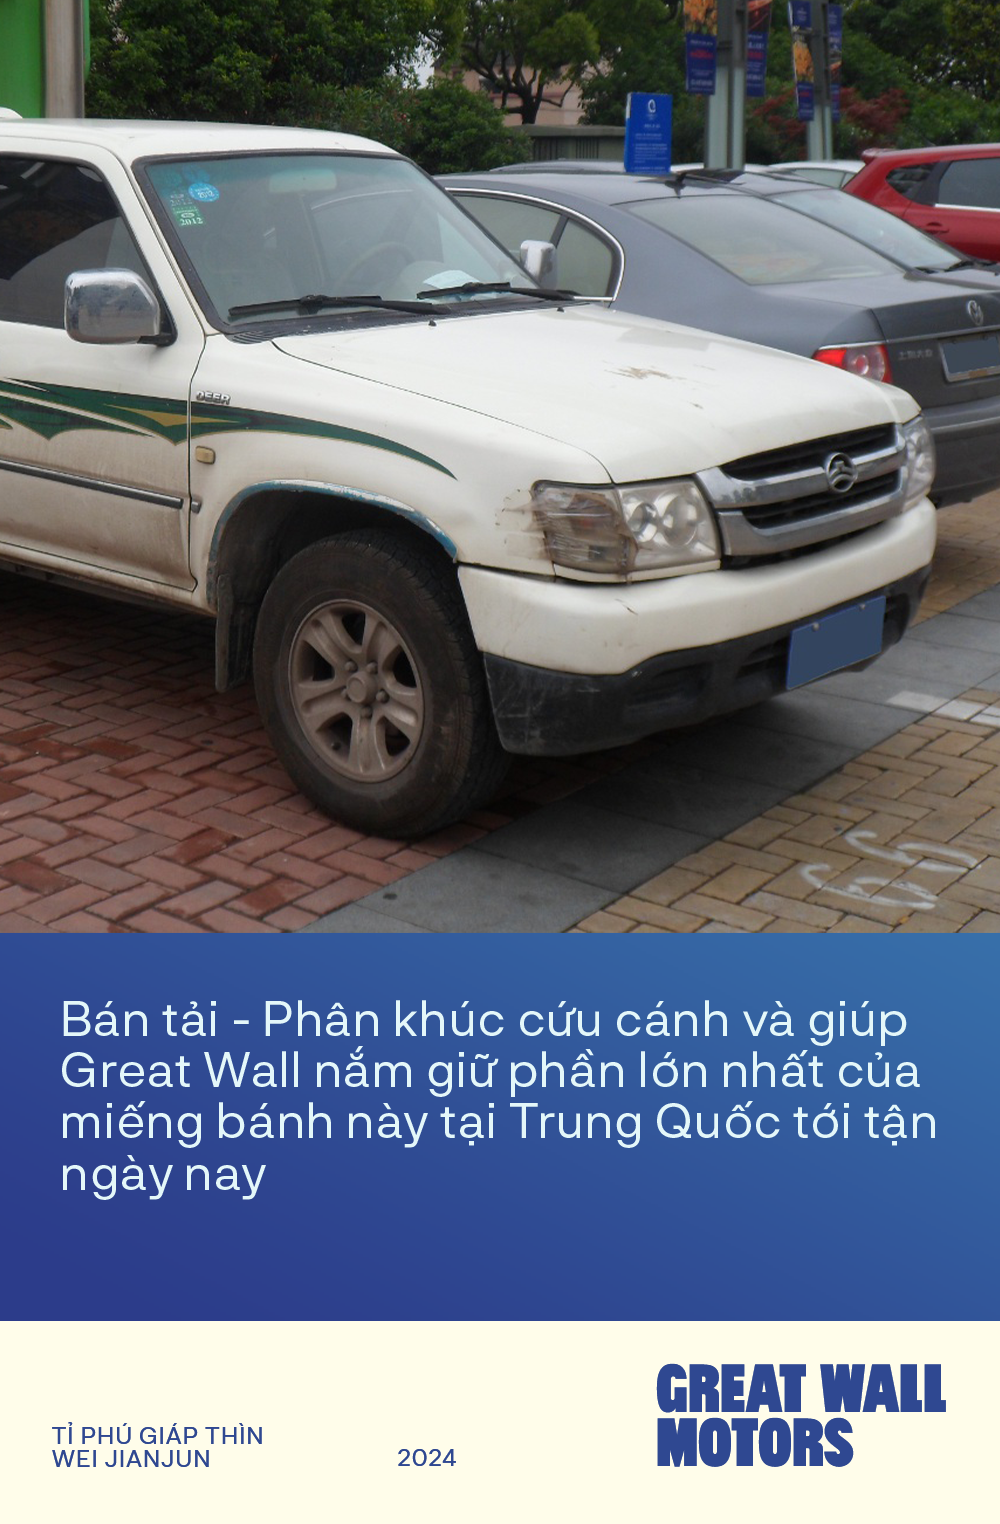 Tỉ phú Giáp Thìn Wei Jianjun - Người biến hãng xe Trung Quốc từ căn tường đổ sụp tới ‘Vạn lý trường thành’ - Ảnh 3.